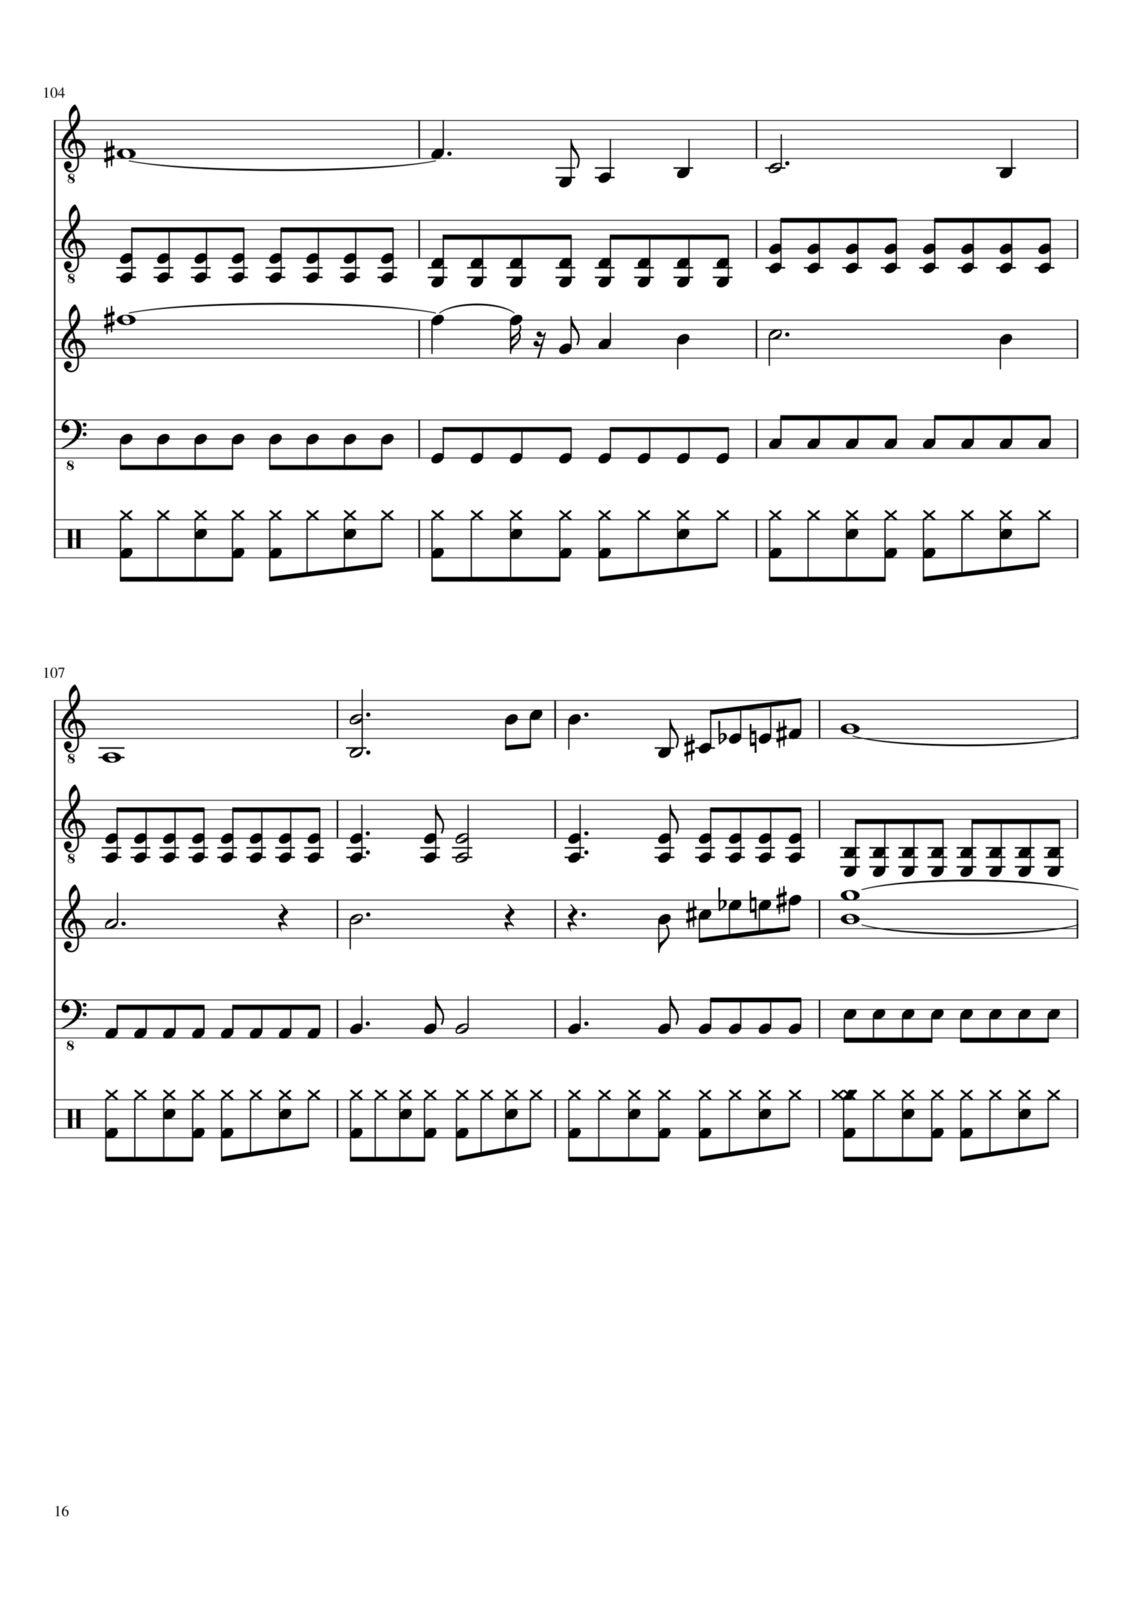 Vospominaniya o byiloy lyubvi slide, Image 16